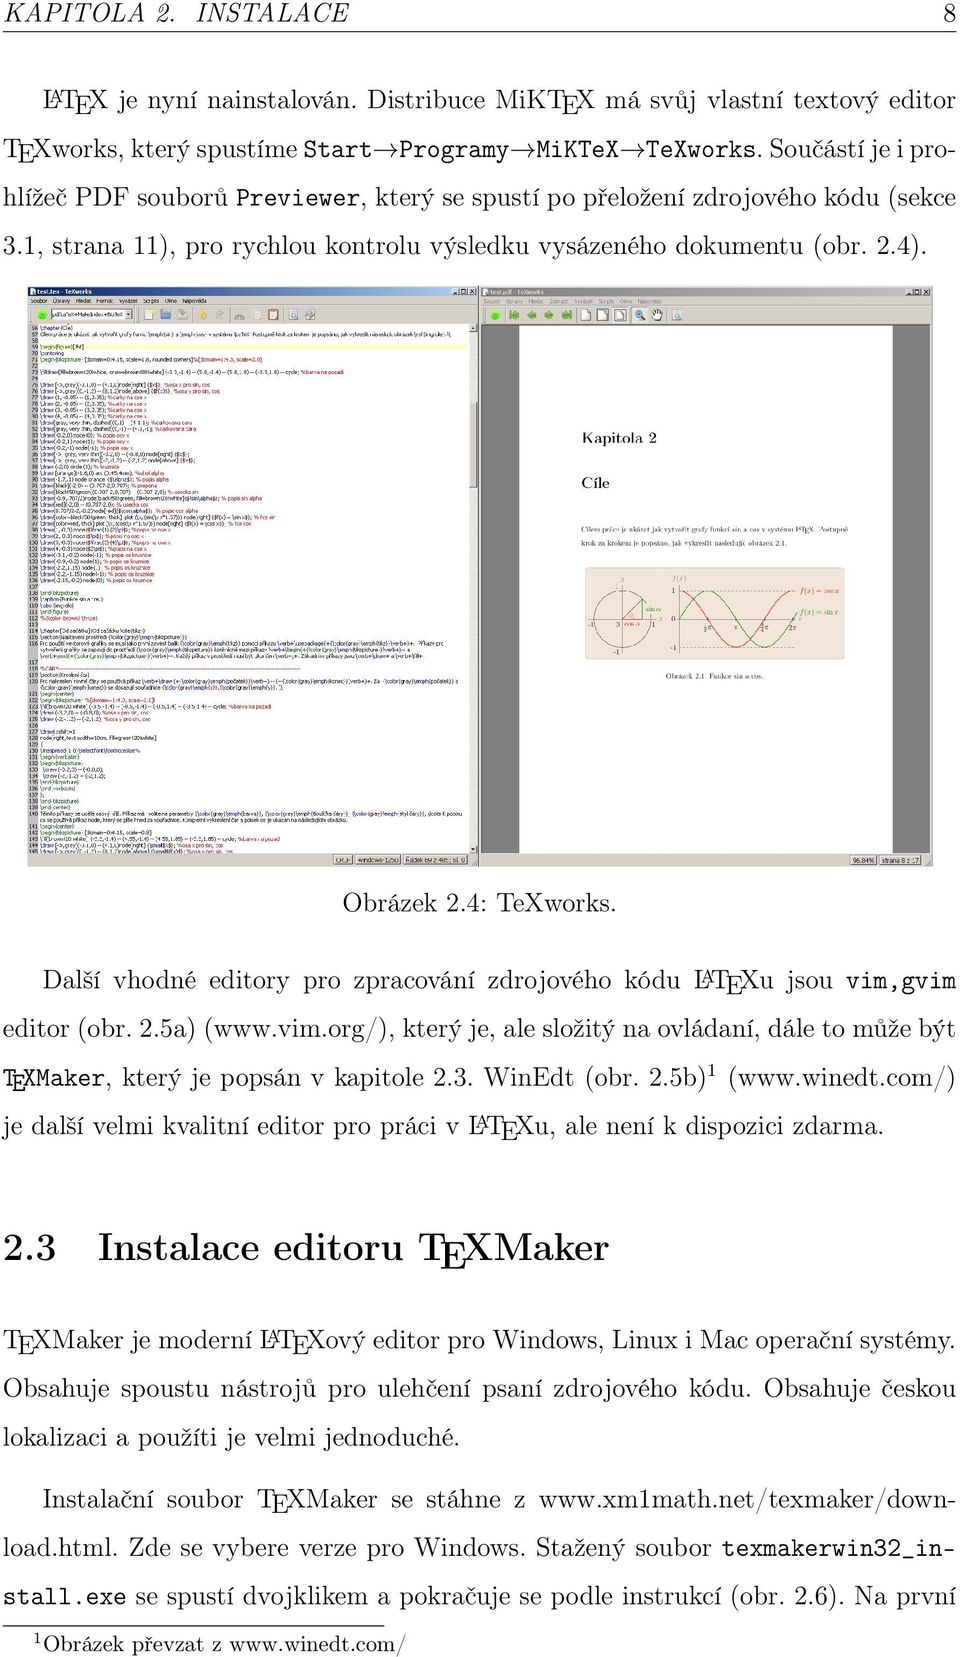 4: TeXworks. Další vhodné editory pro zpracování zdrojového kódu L A TEXu jsou vim,gvim editor (obr. 2.5a) (www.vim.org/), který je, ale složitý na ovládaní, dále to může být TEXMaker, který je popsán v kapitole 2.